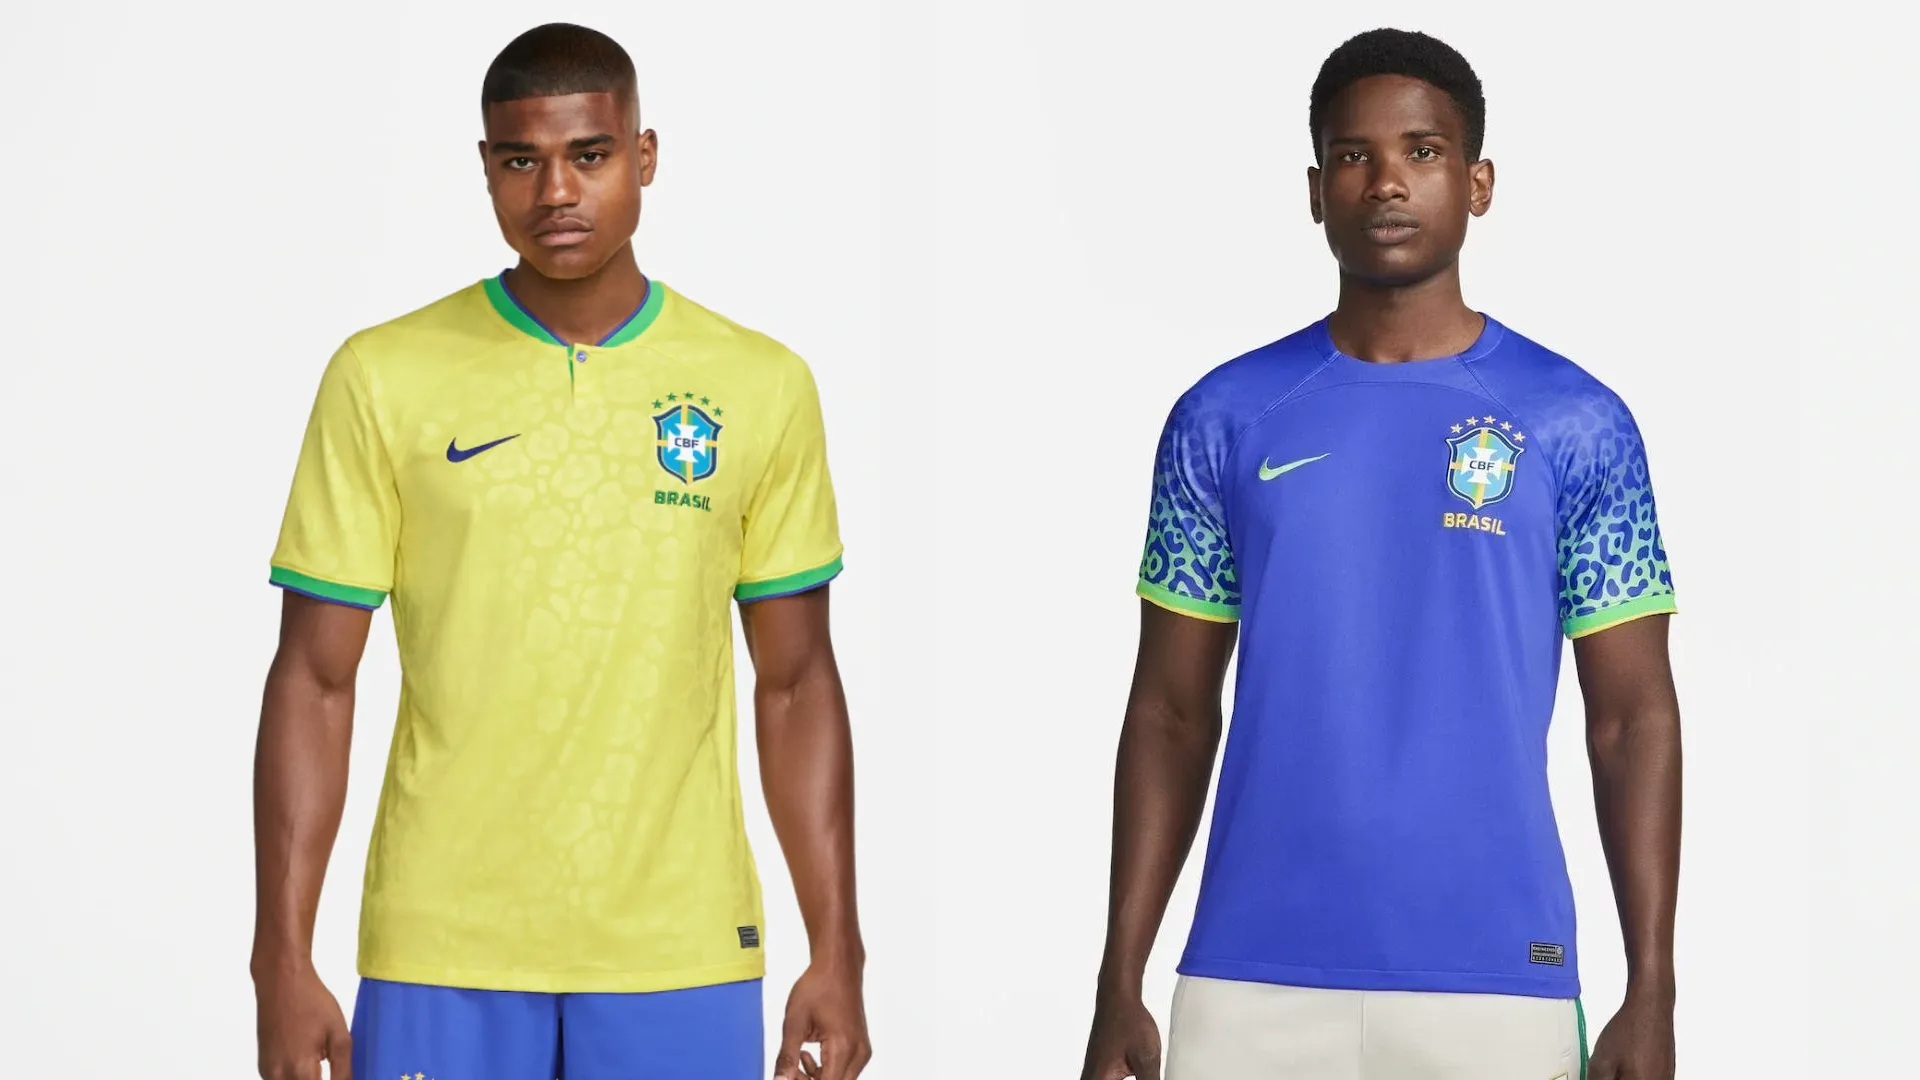 Camisas das equipes do Mundial de Clubes da FIFA 2022